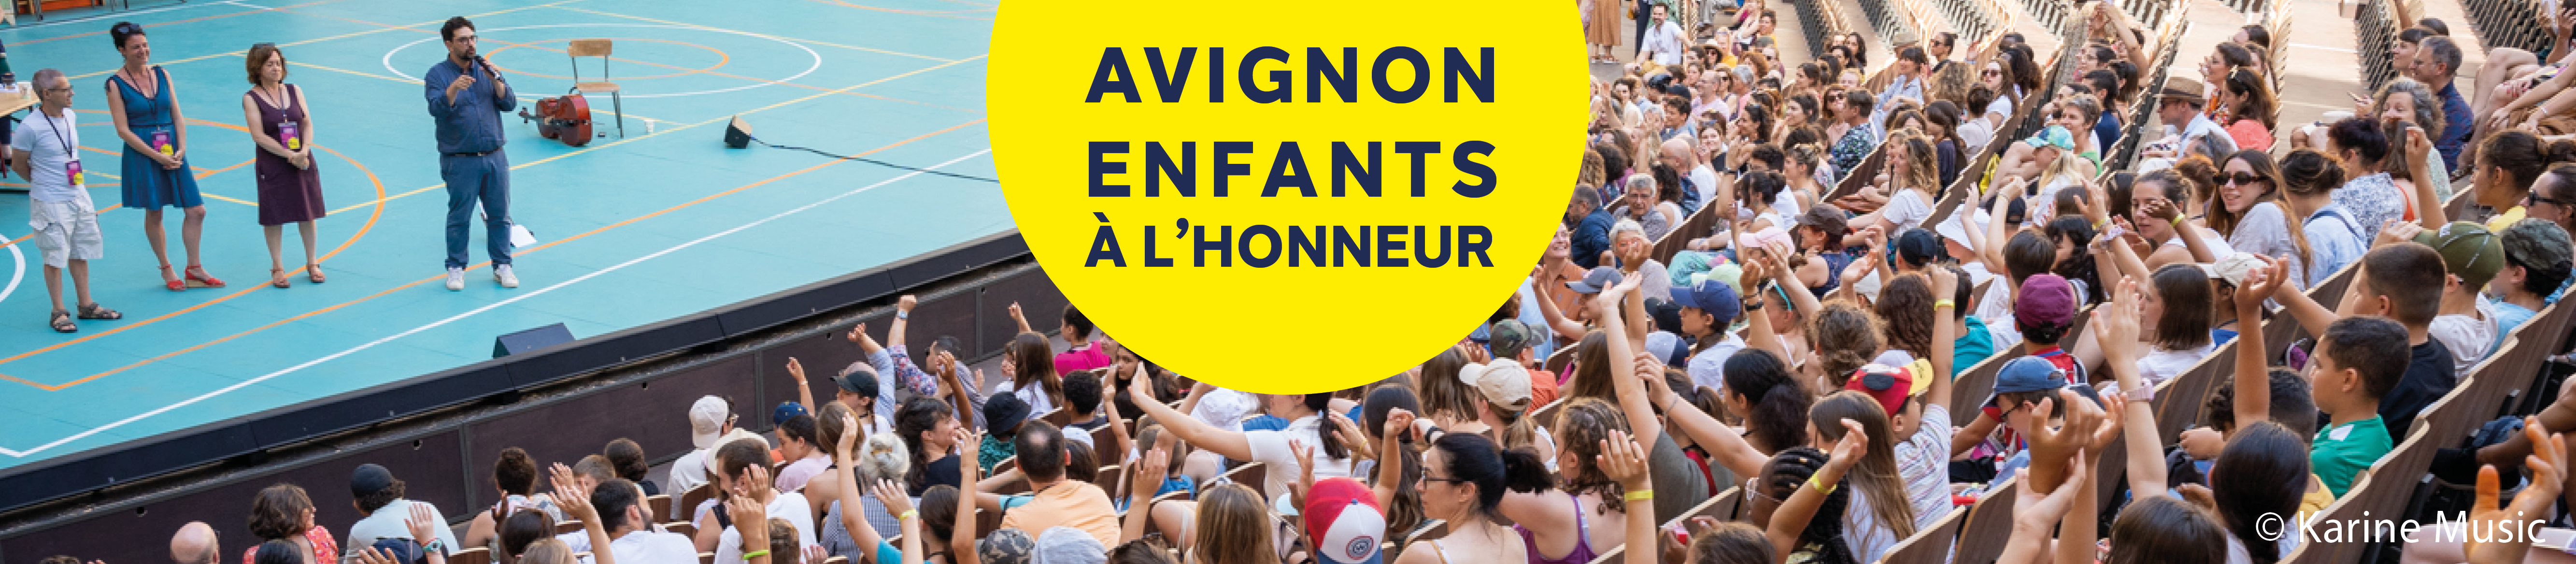 Avignon, enfants à l'honneur